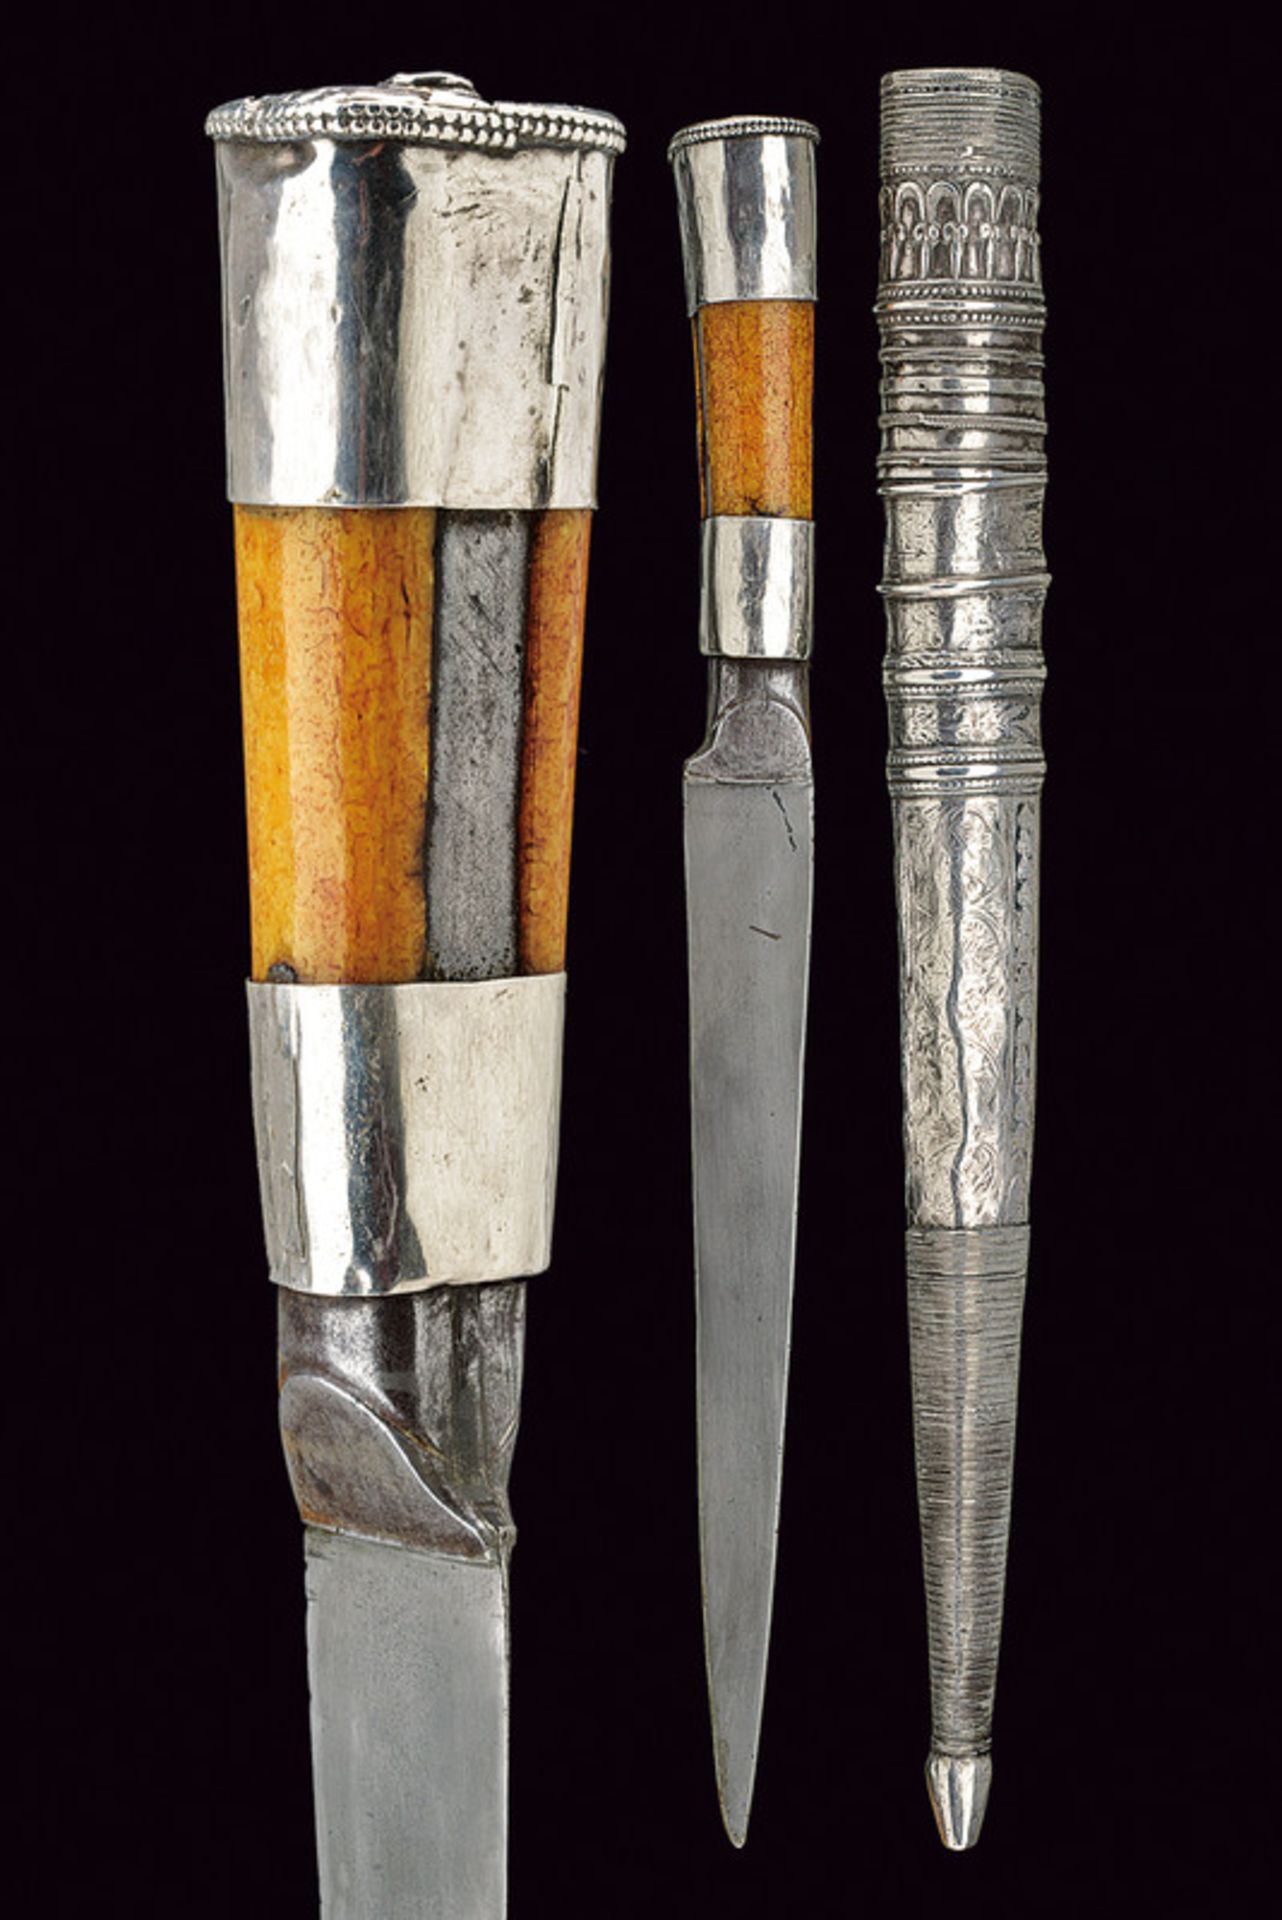 A kard (dagger)